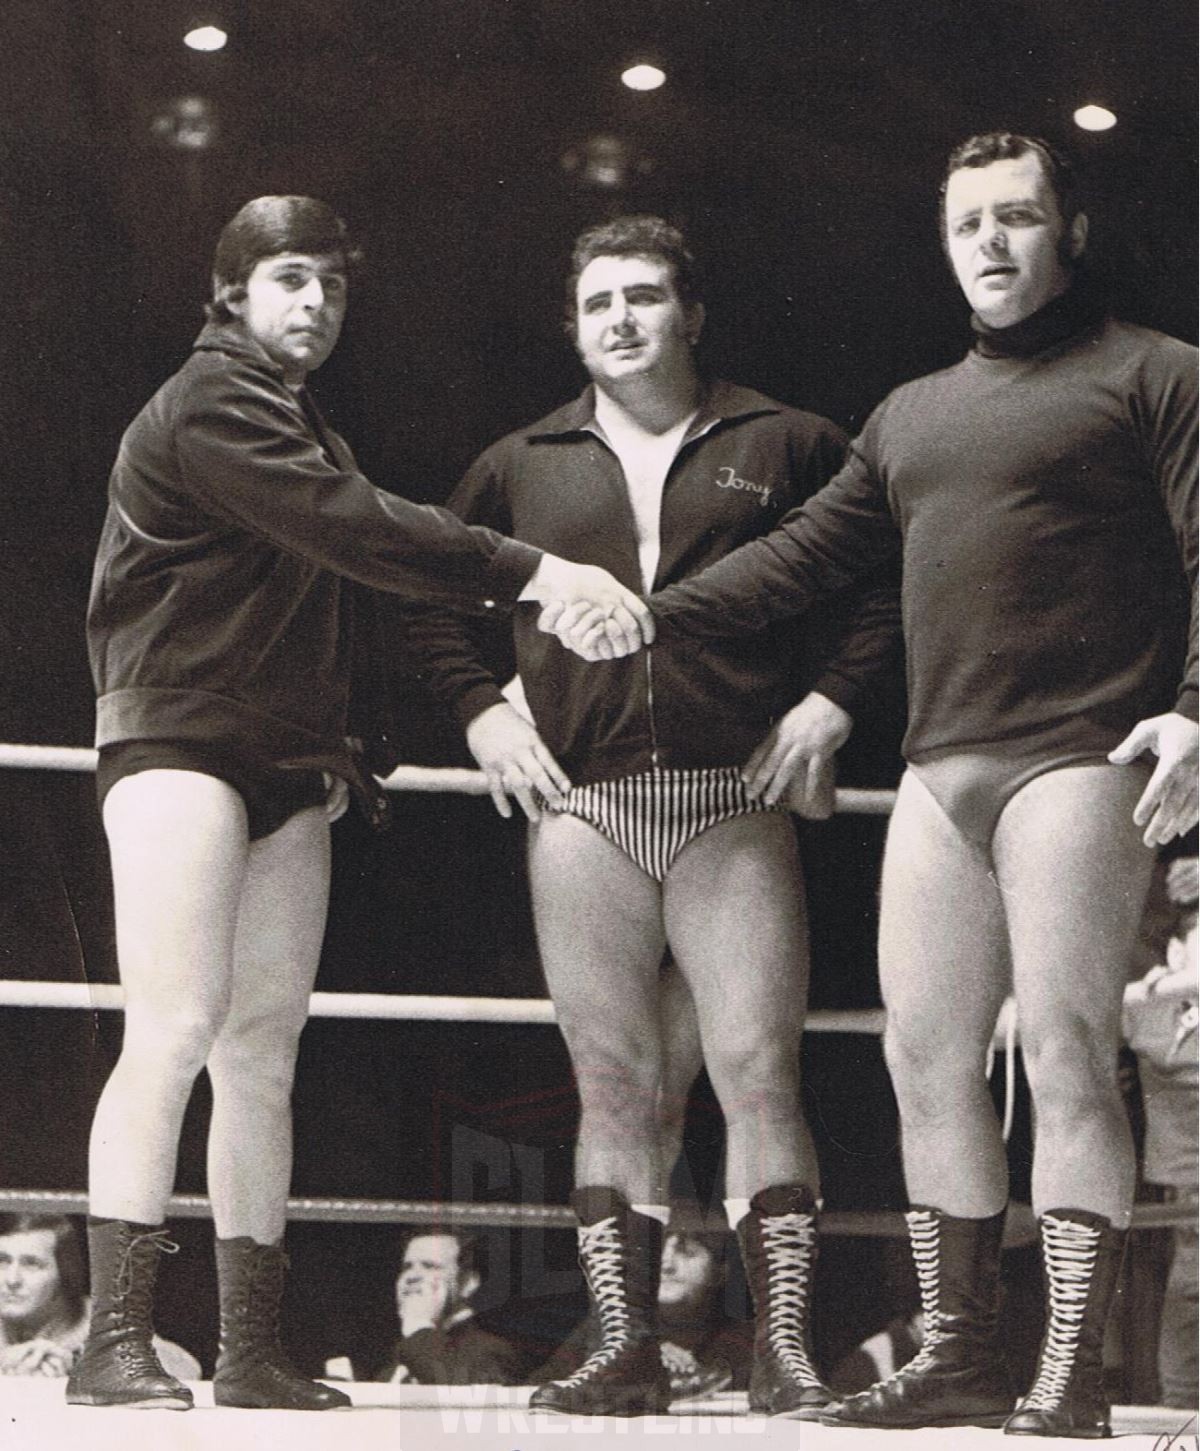 A young Dino Bravo, Tony Parisi and Gino Brito Sr. in Montreal.